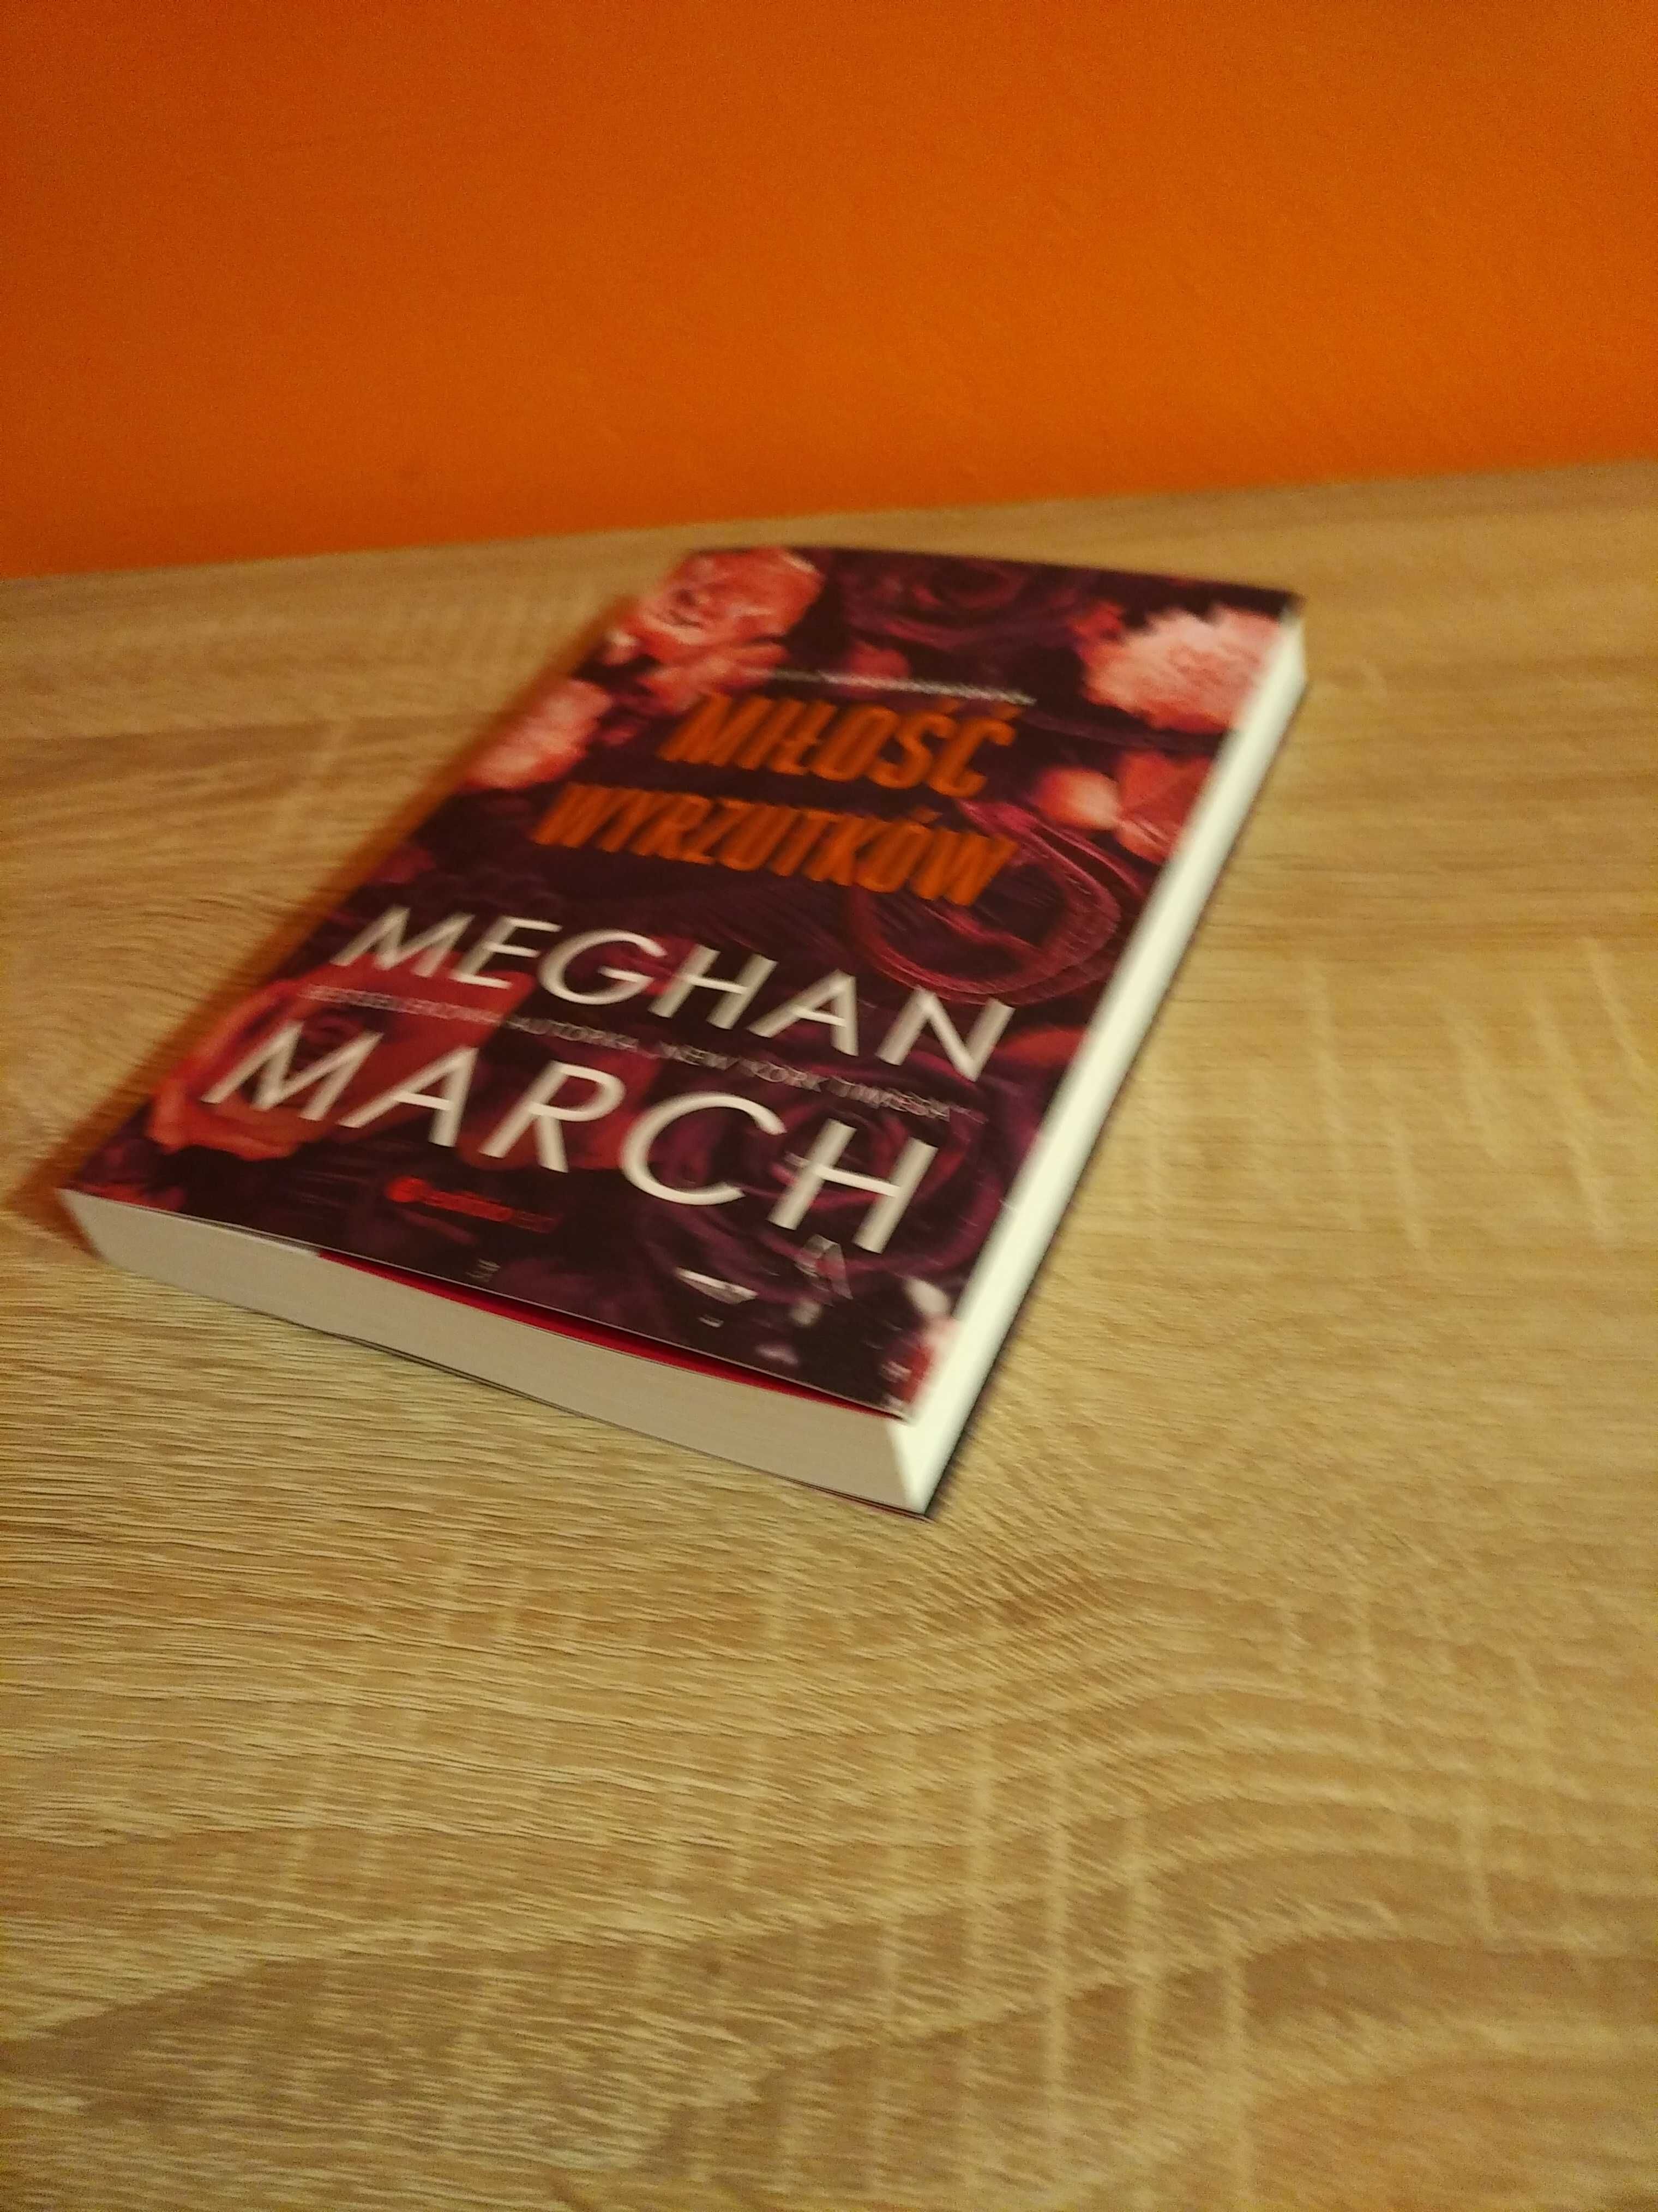 Miłość wyrzutków Meghan March jak nowa